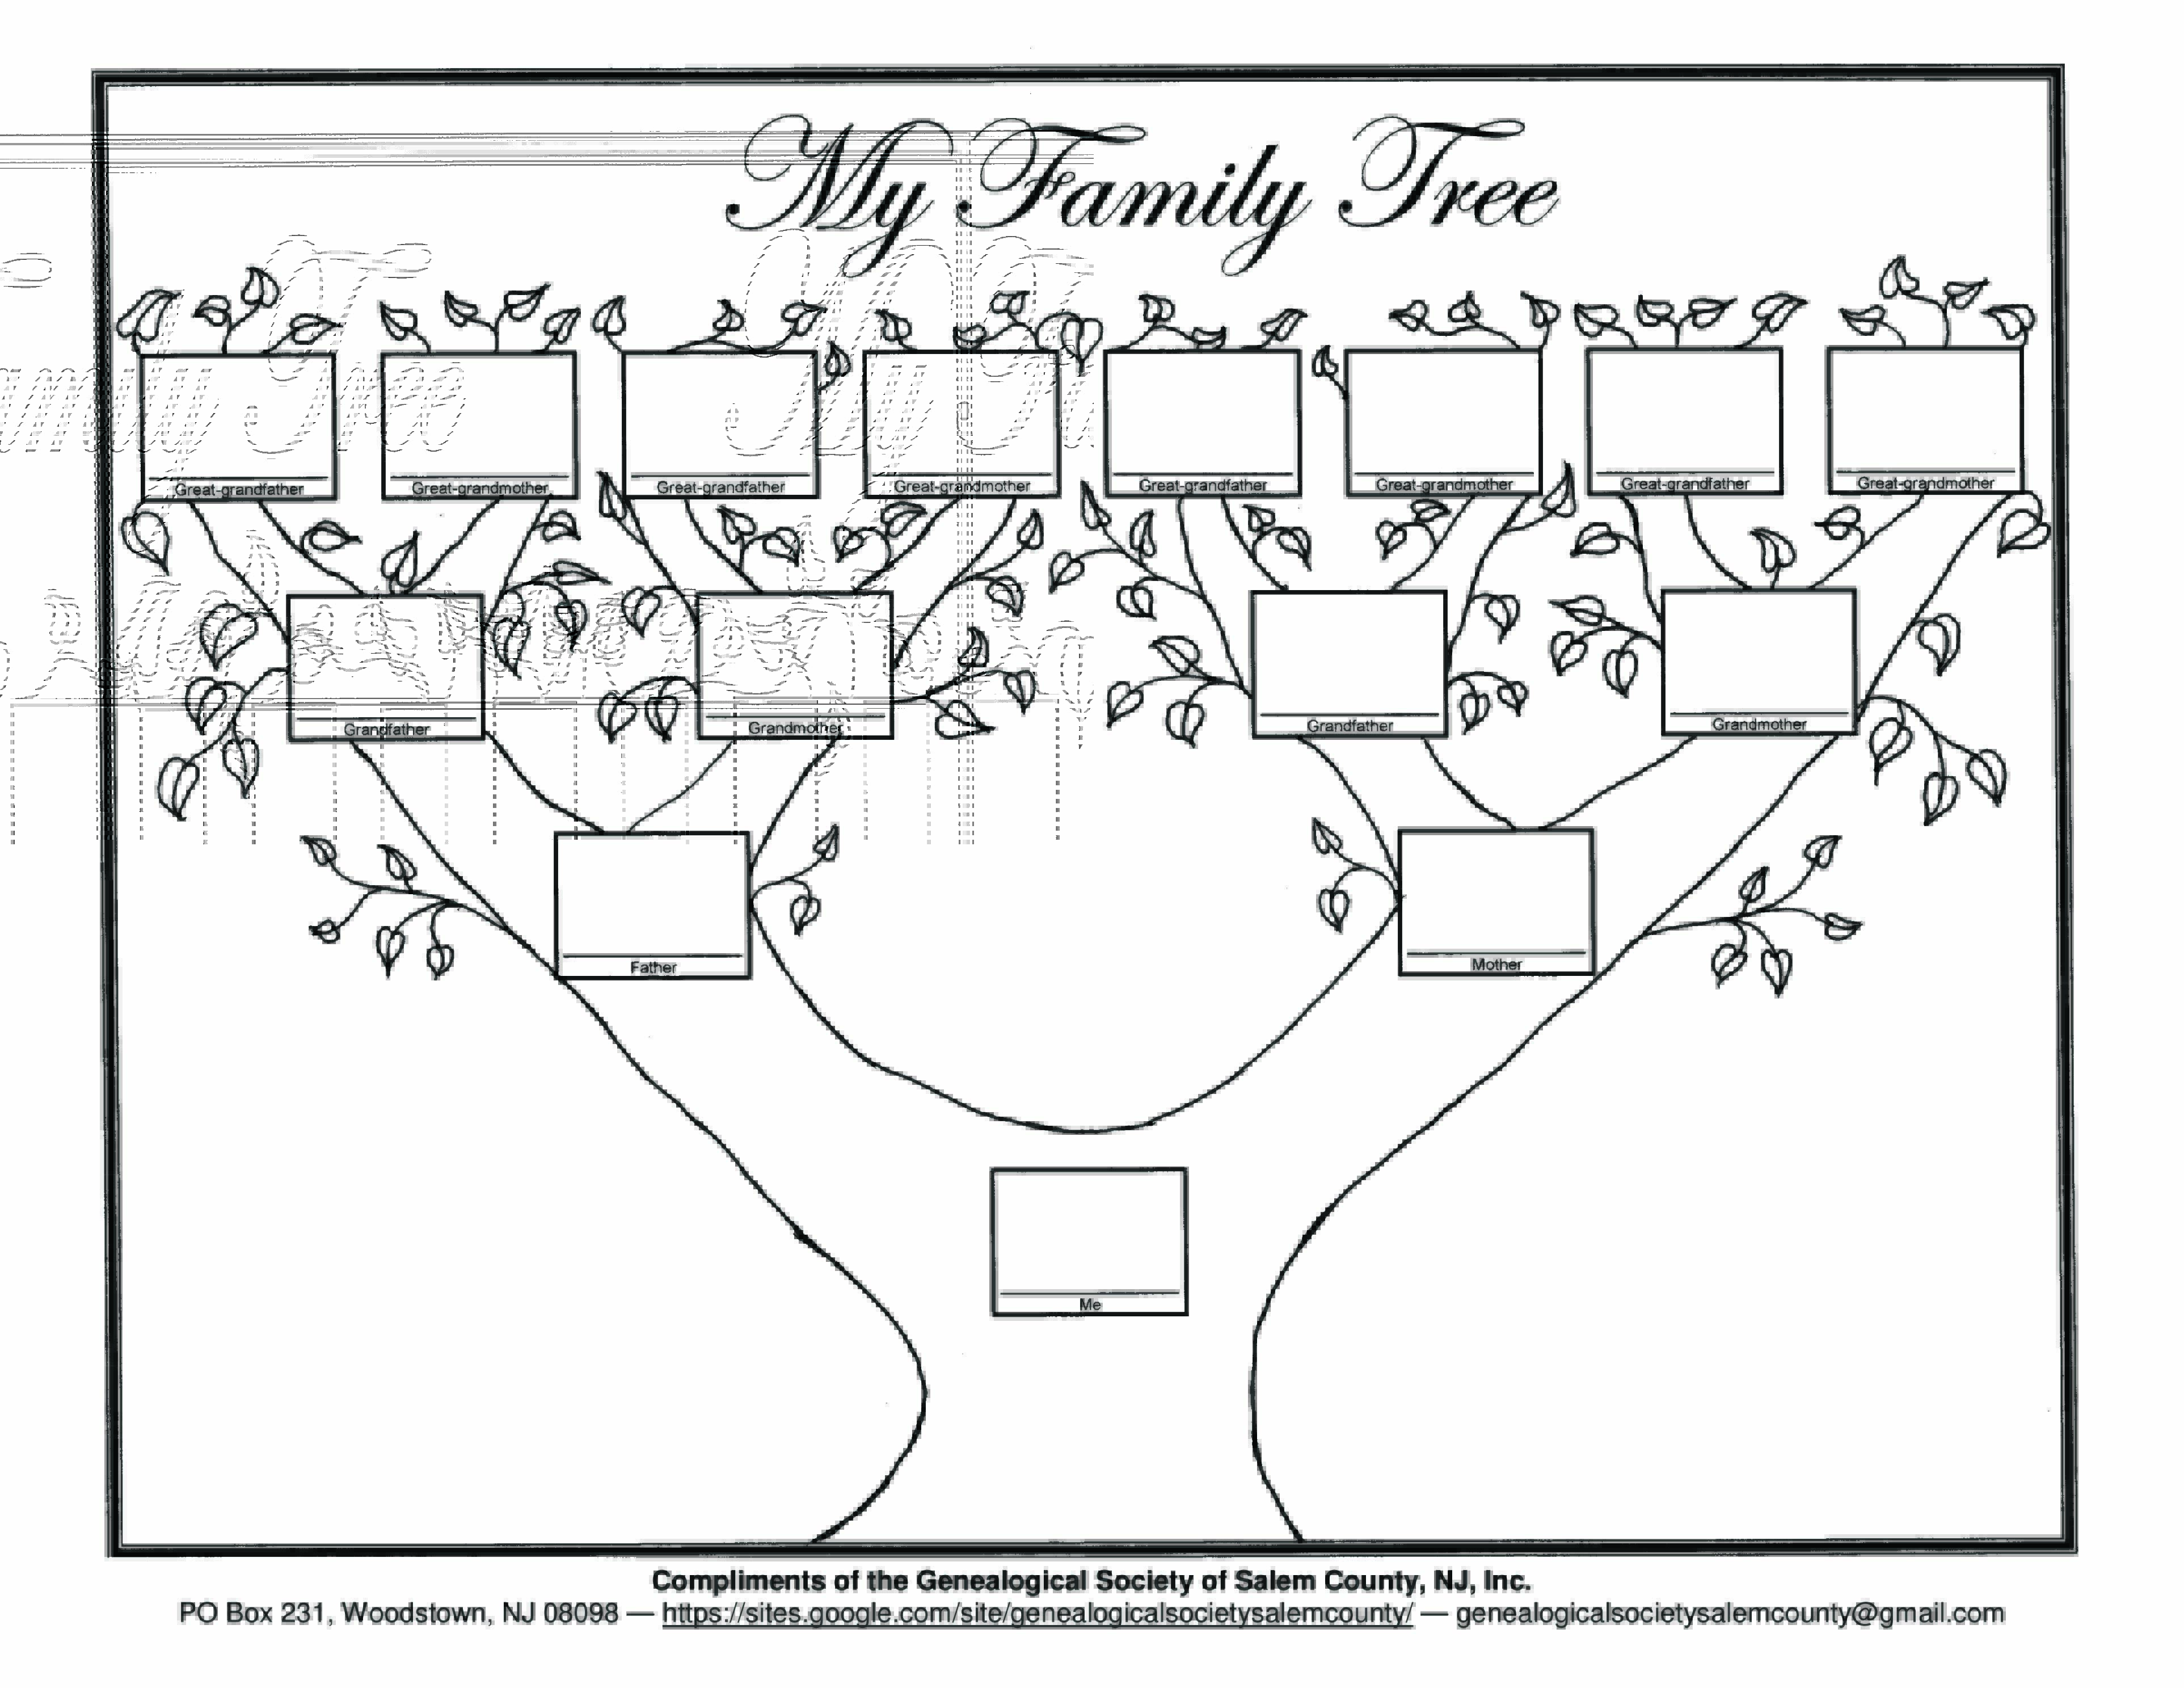 Blank Family Tree form